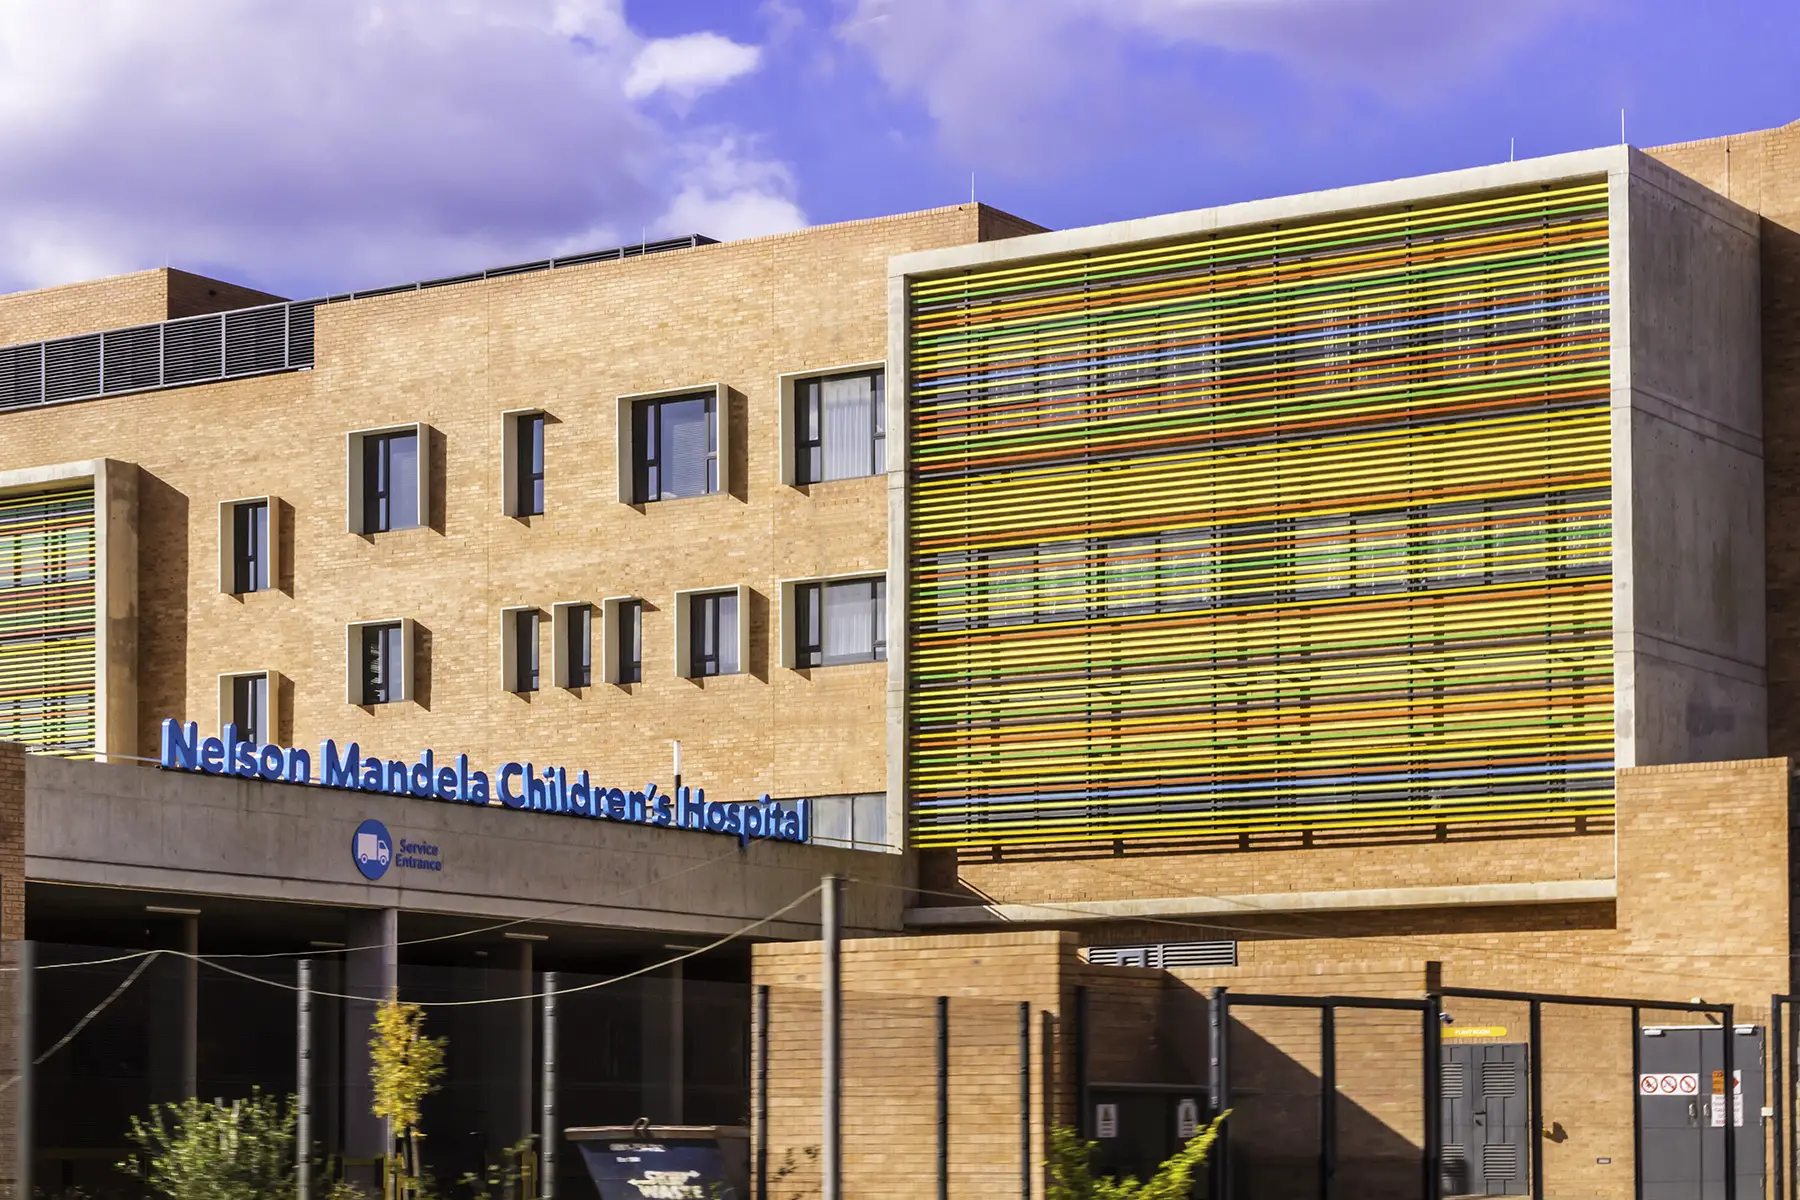 Nelson Mandela Children's Hospital in Johannesburg